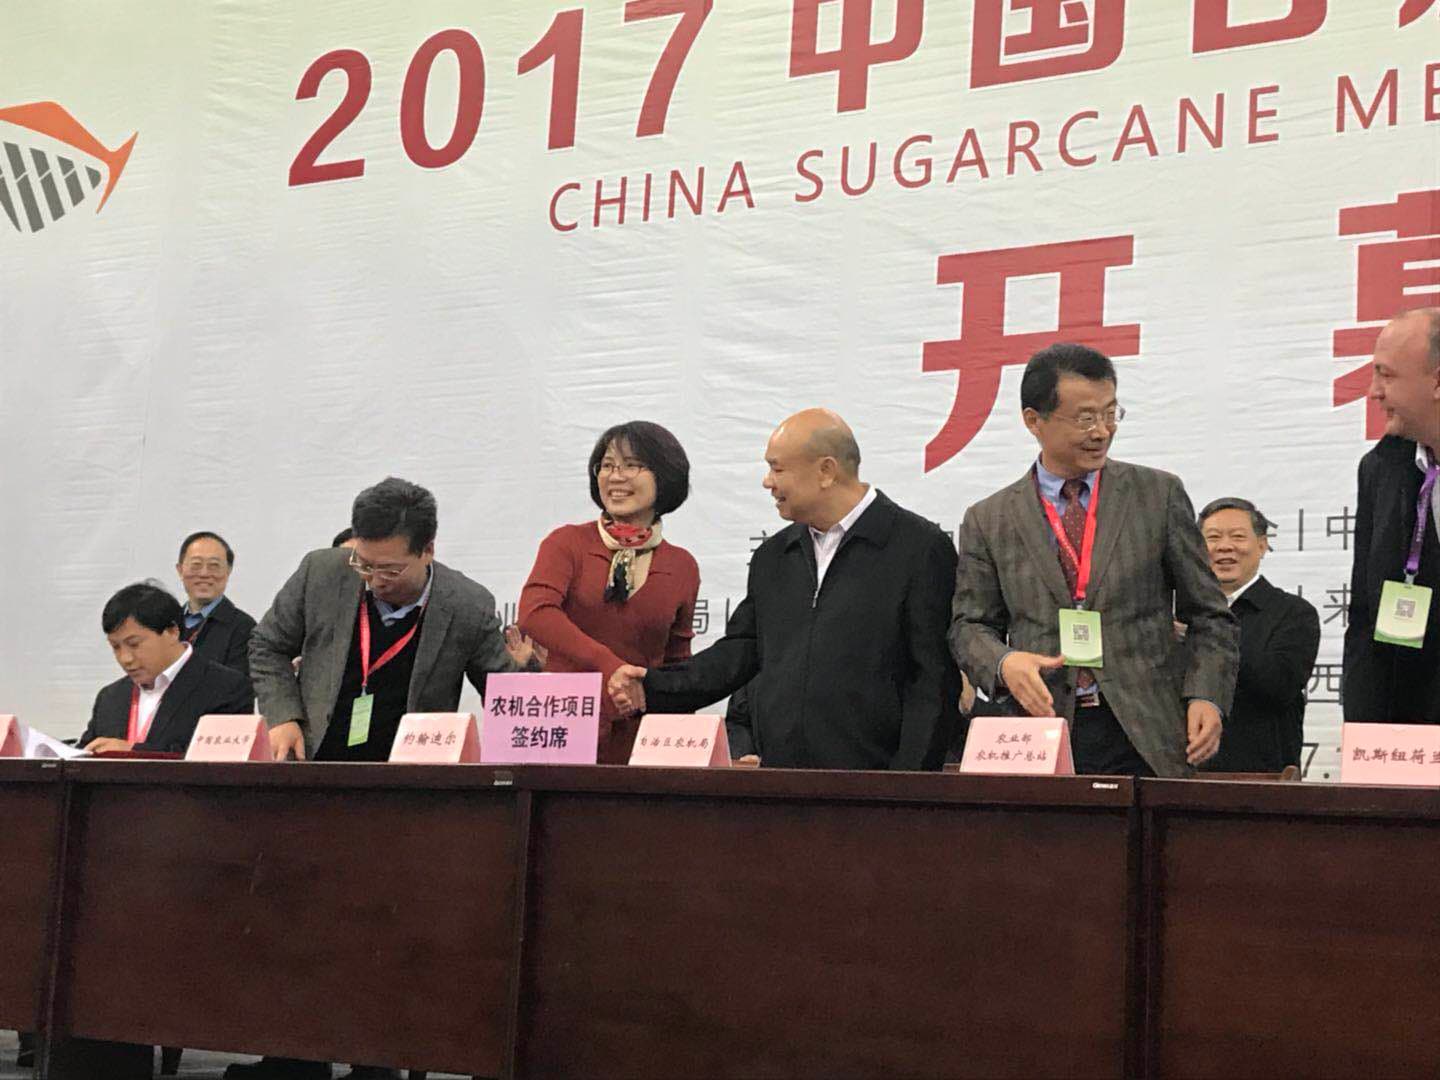 约翰迪尔中国销售市场部总经理李立凤与广西自治区农机局签订合作协议